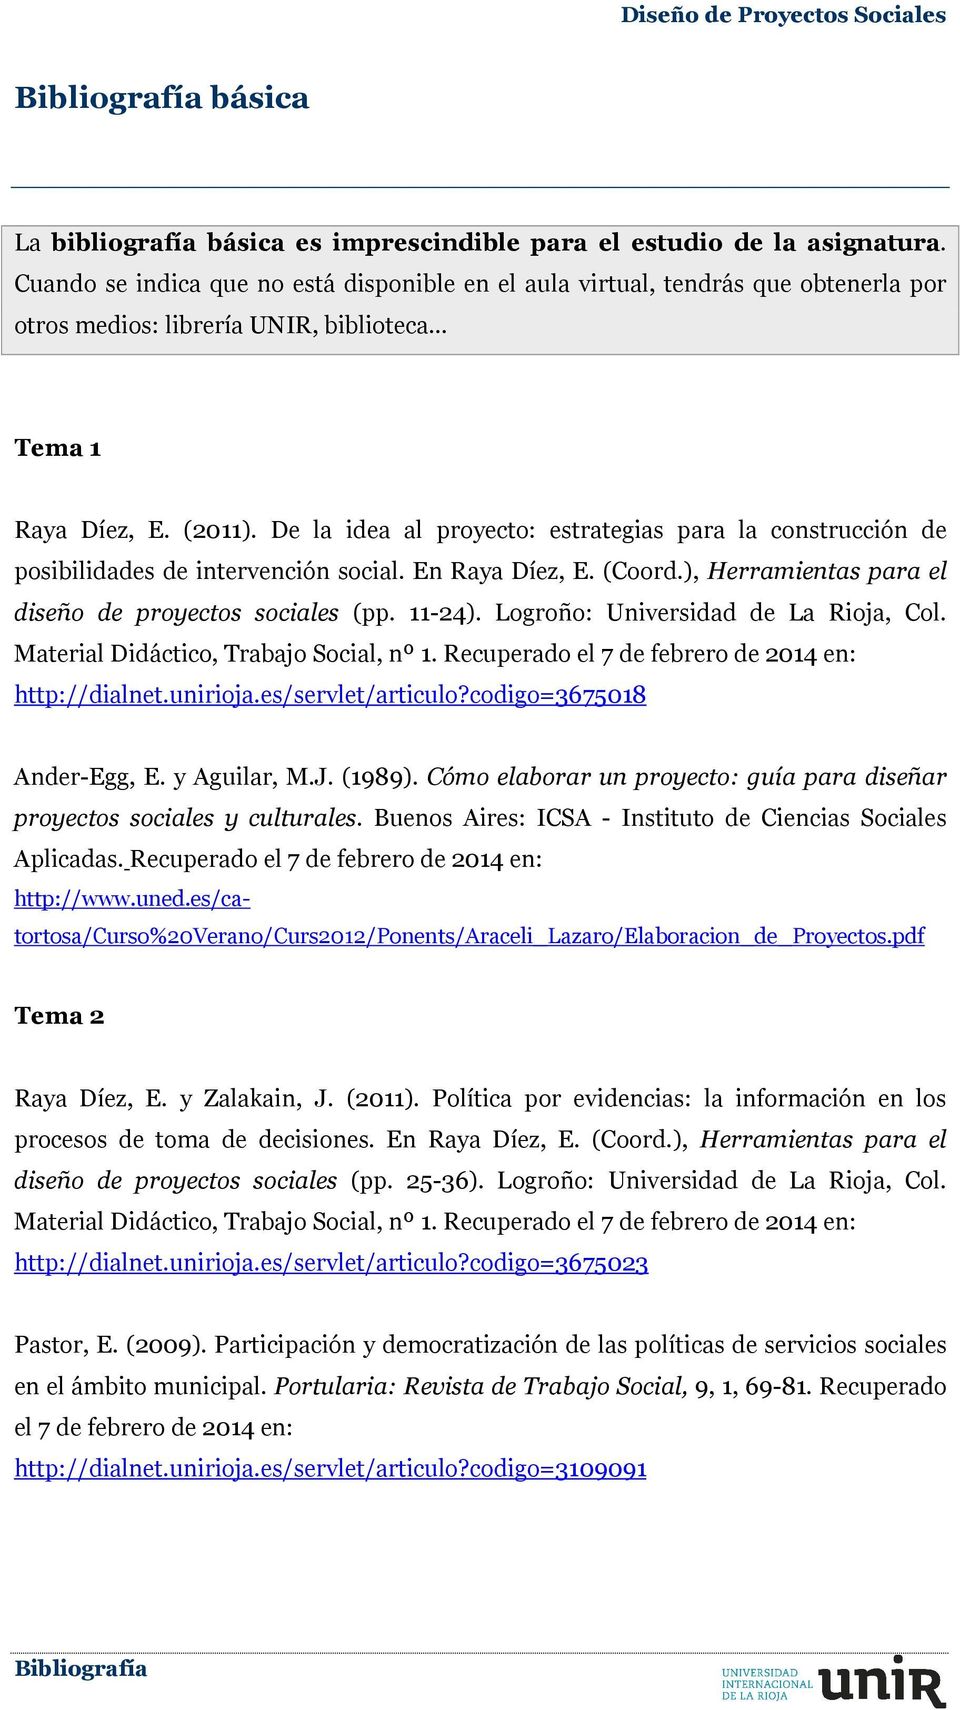 De la idea al proyecto: estrategias para la construcción de posibilidades de intervención social. En Raya Díez, E. (Coord.), Herramientas para el diseño de proyectos sociales (pp. 11-24).